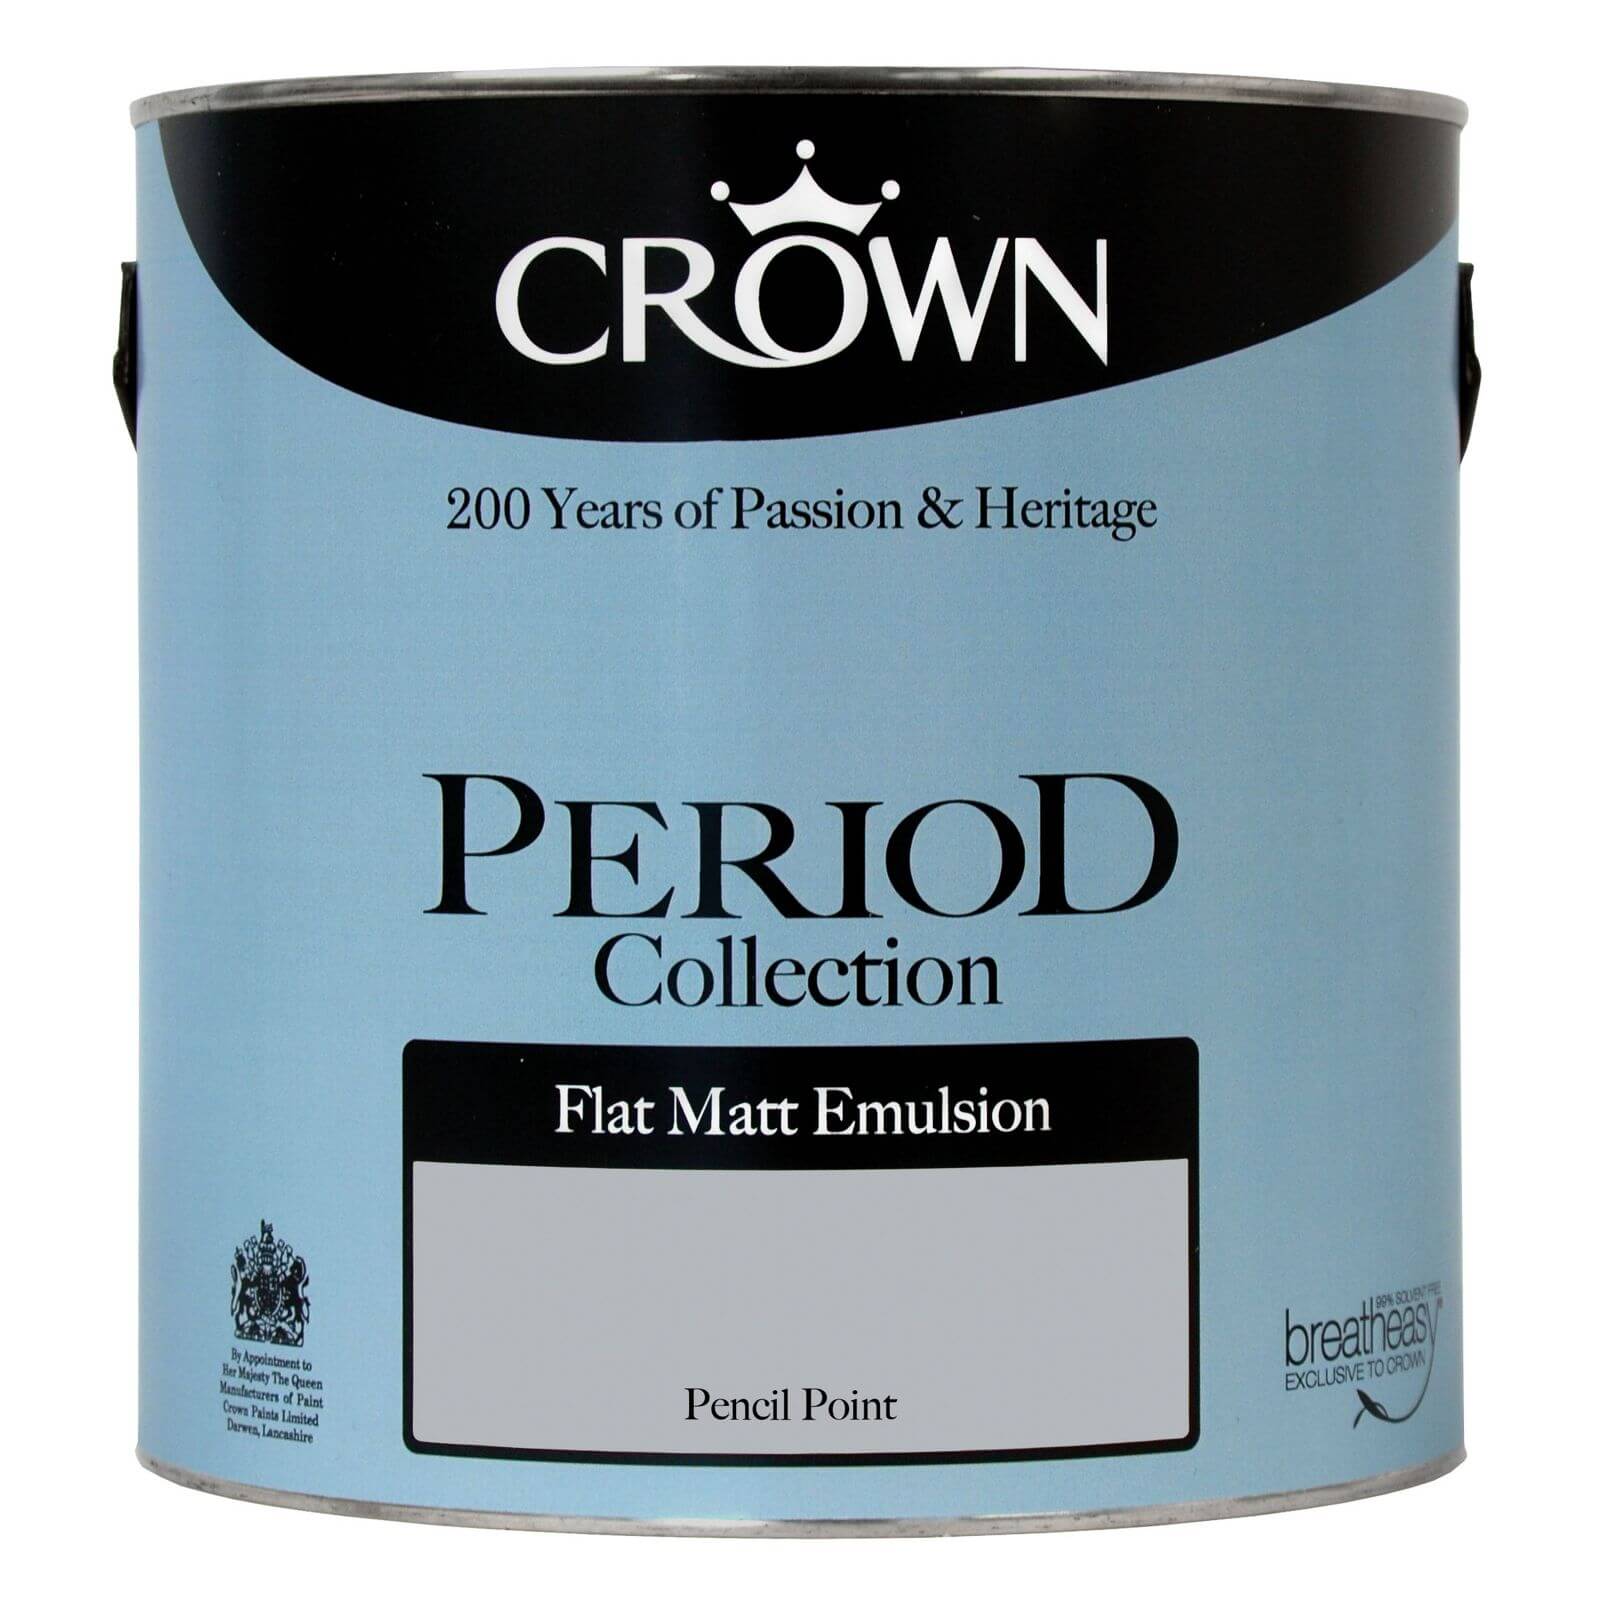 Crown Period Collection Pencil Point - Flat Matt Emulsion Paint - 2.5L